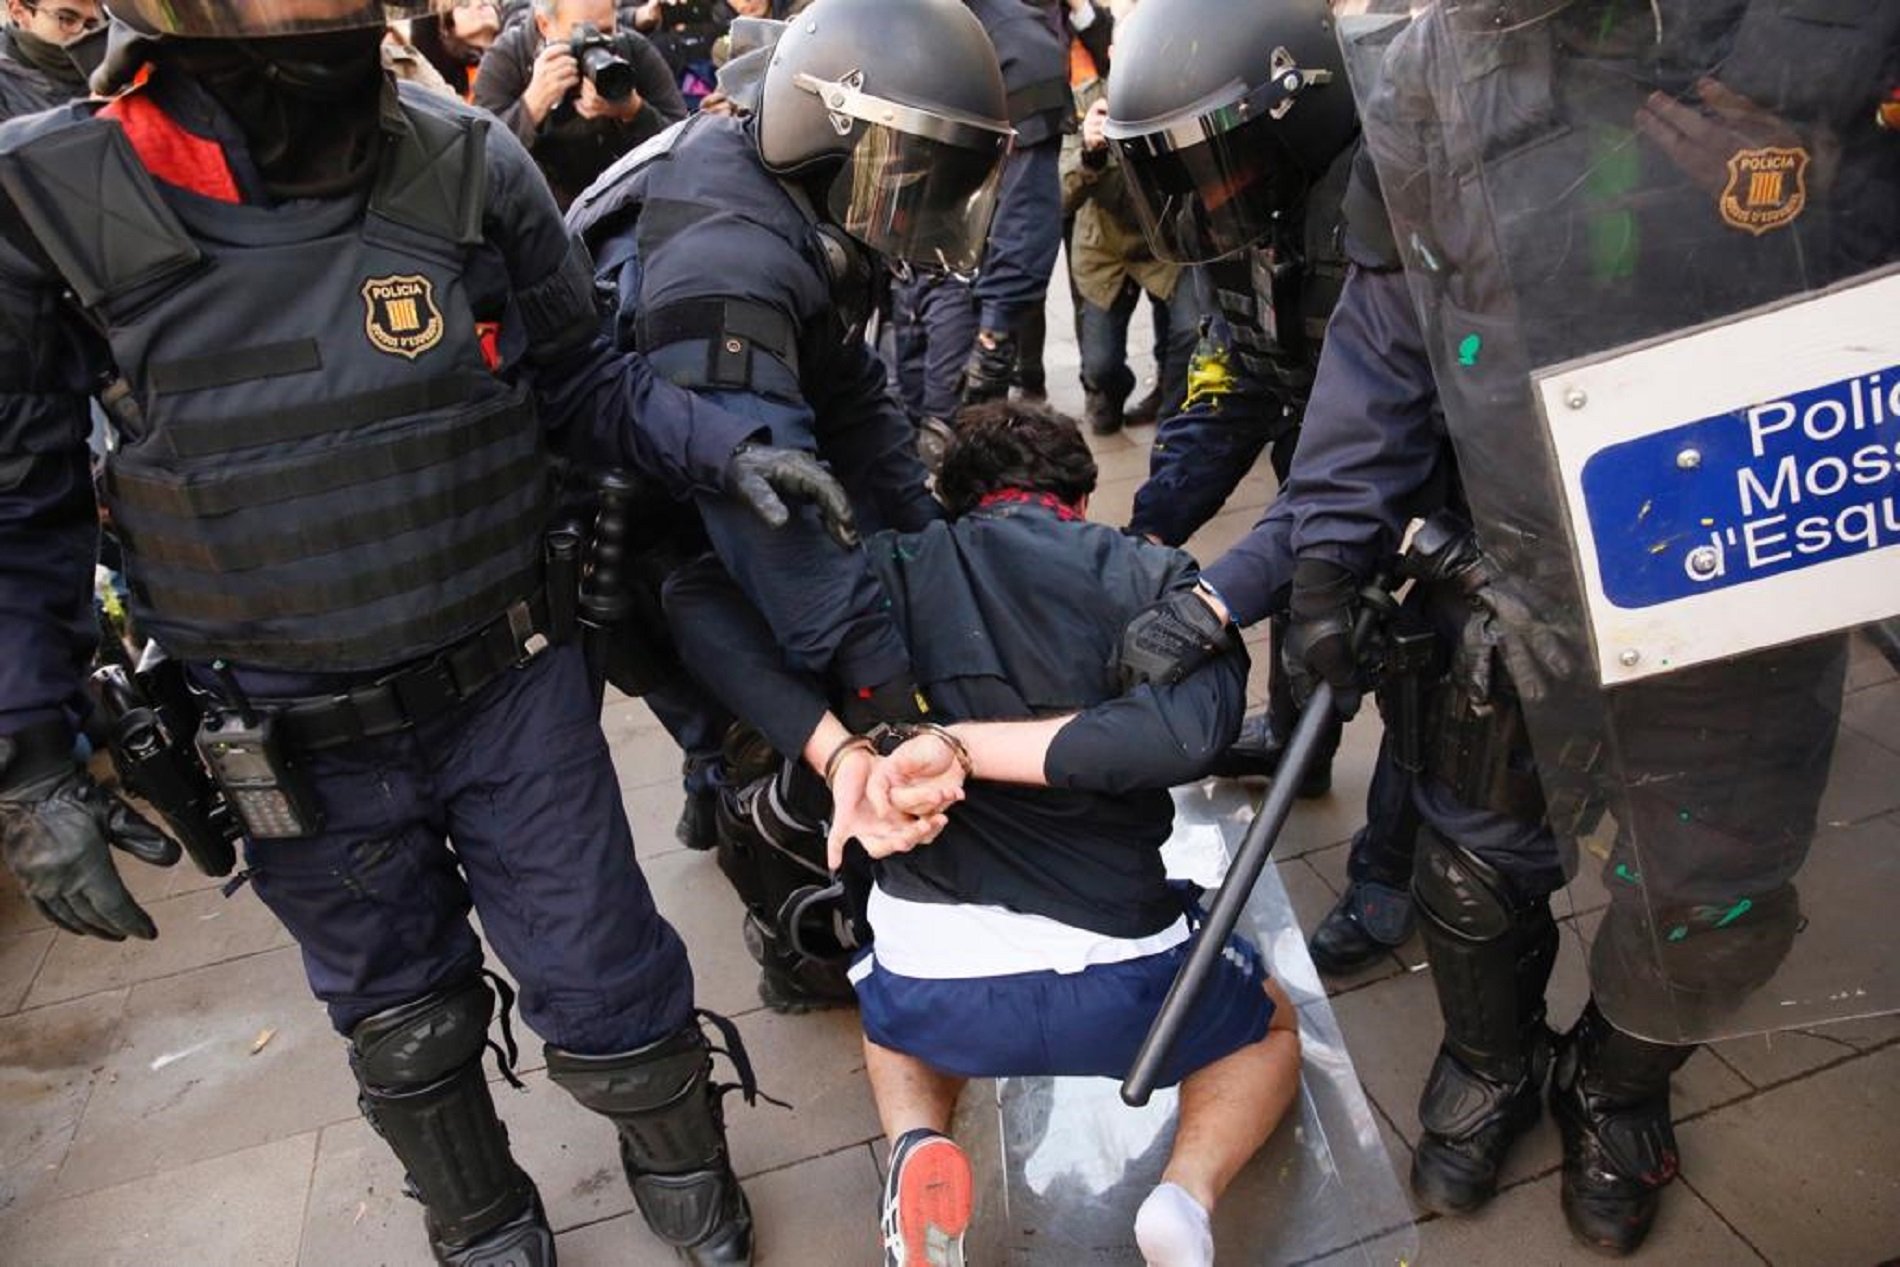 Tretze detinguts per desordres a Drassanes, Via Laietana i l'Ampolla